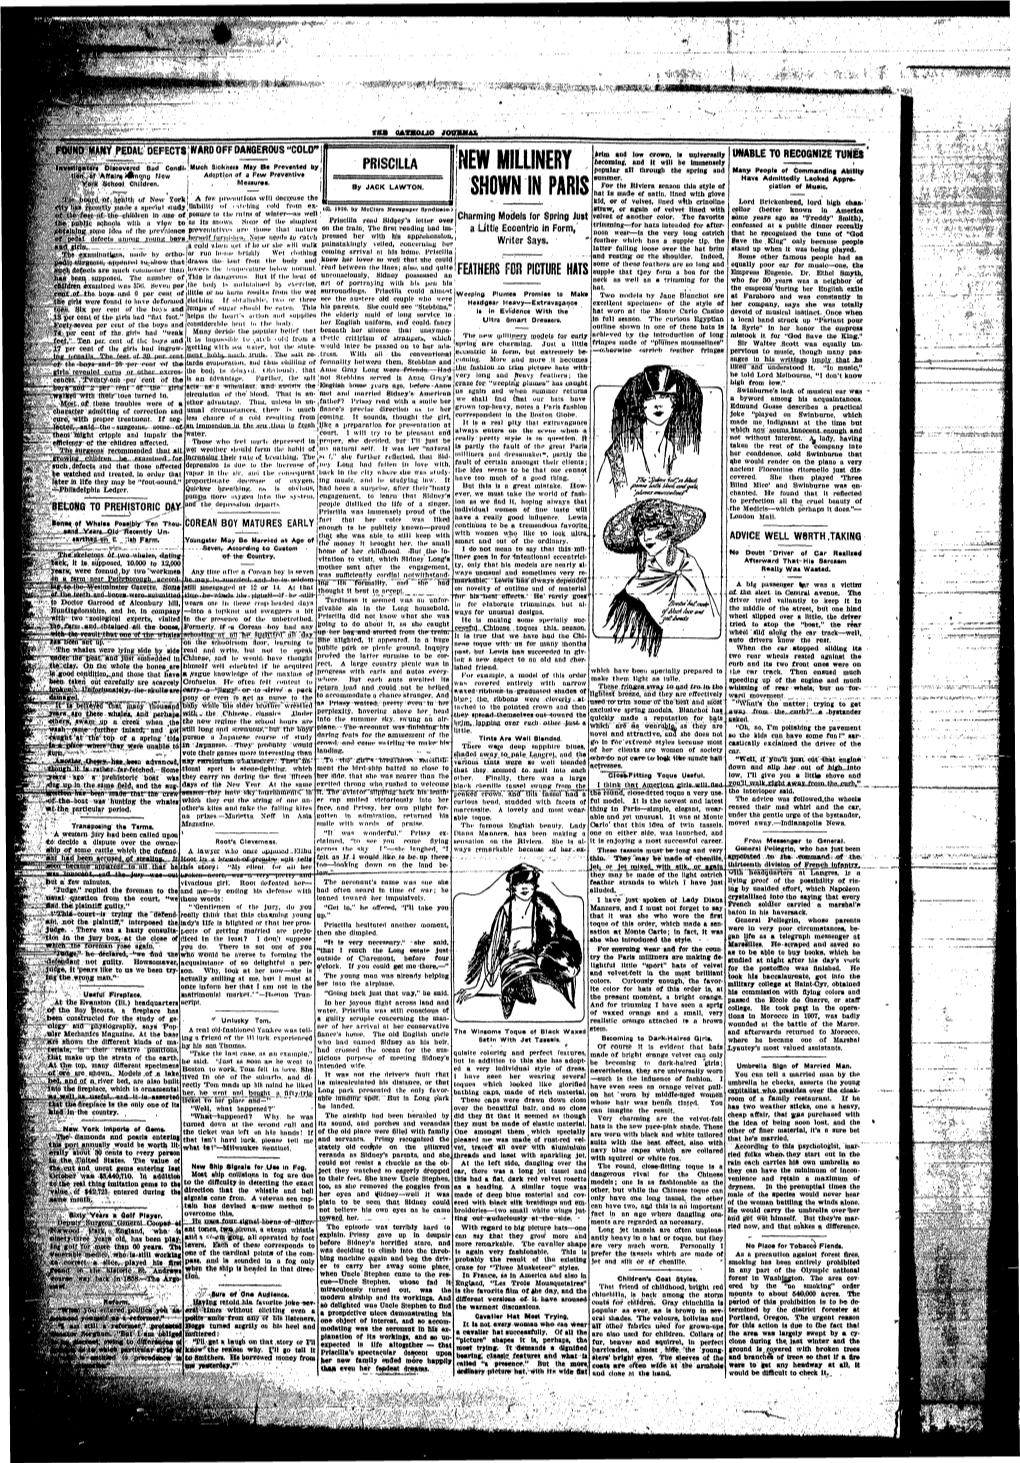 Catholic-Journal-1922-January-1925-February